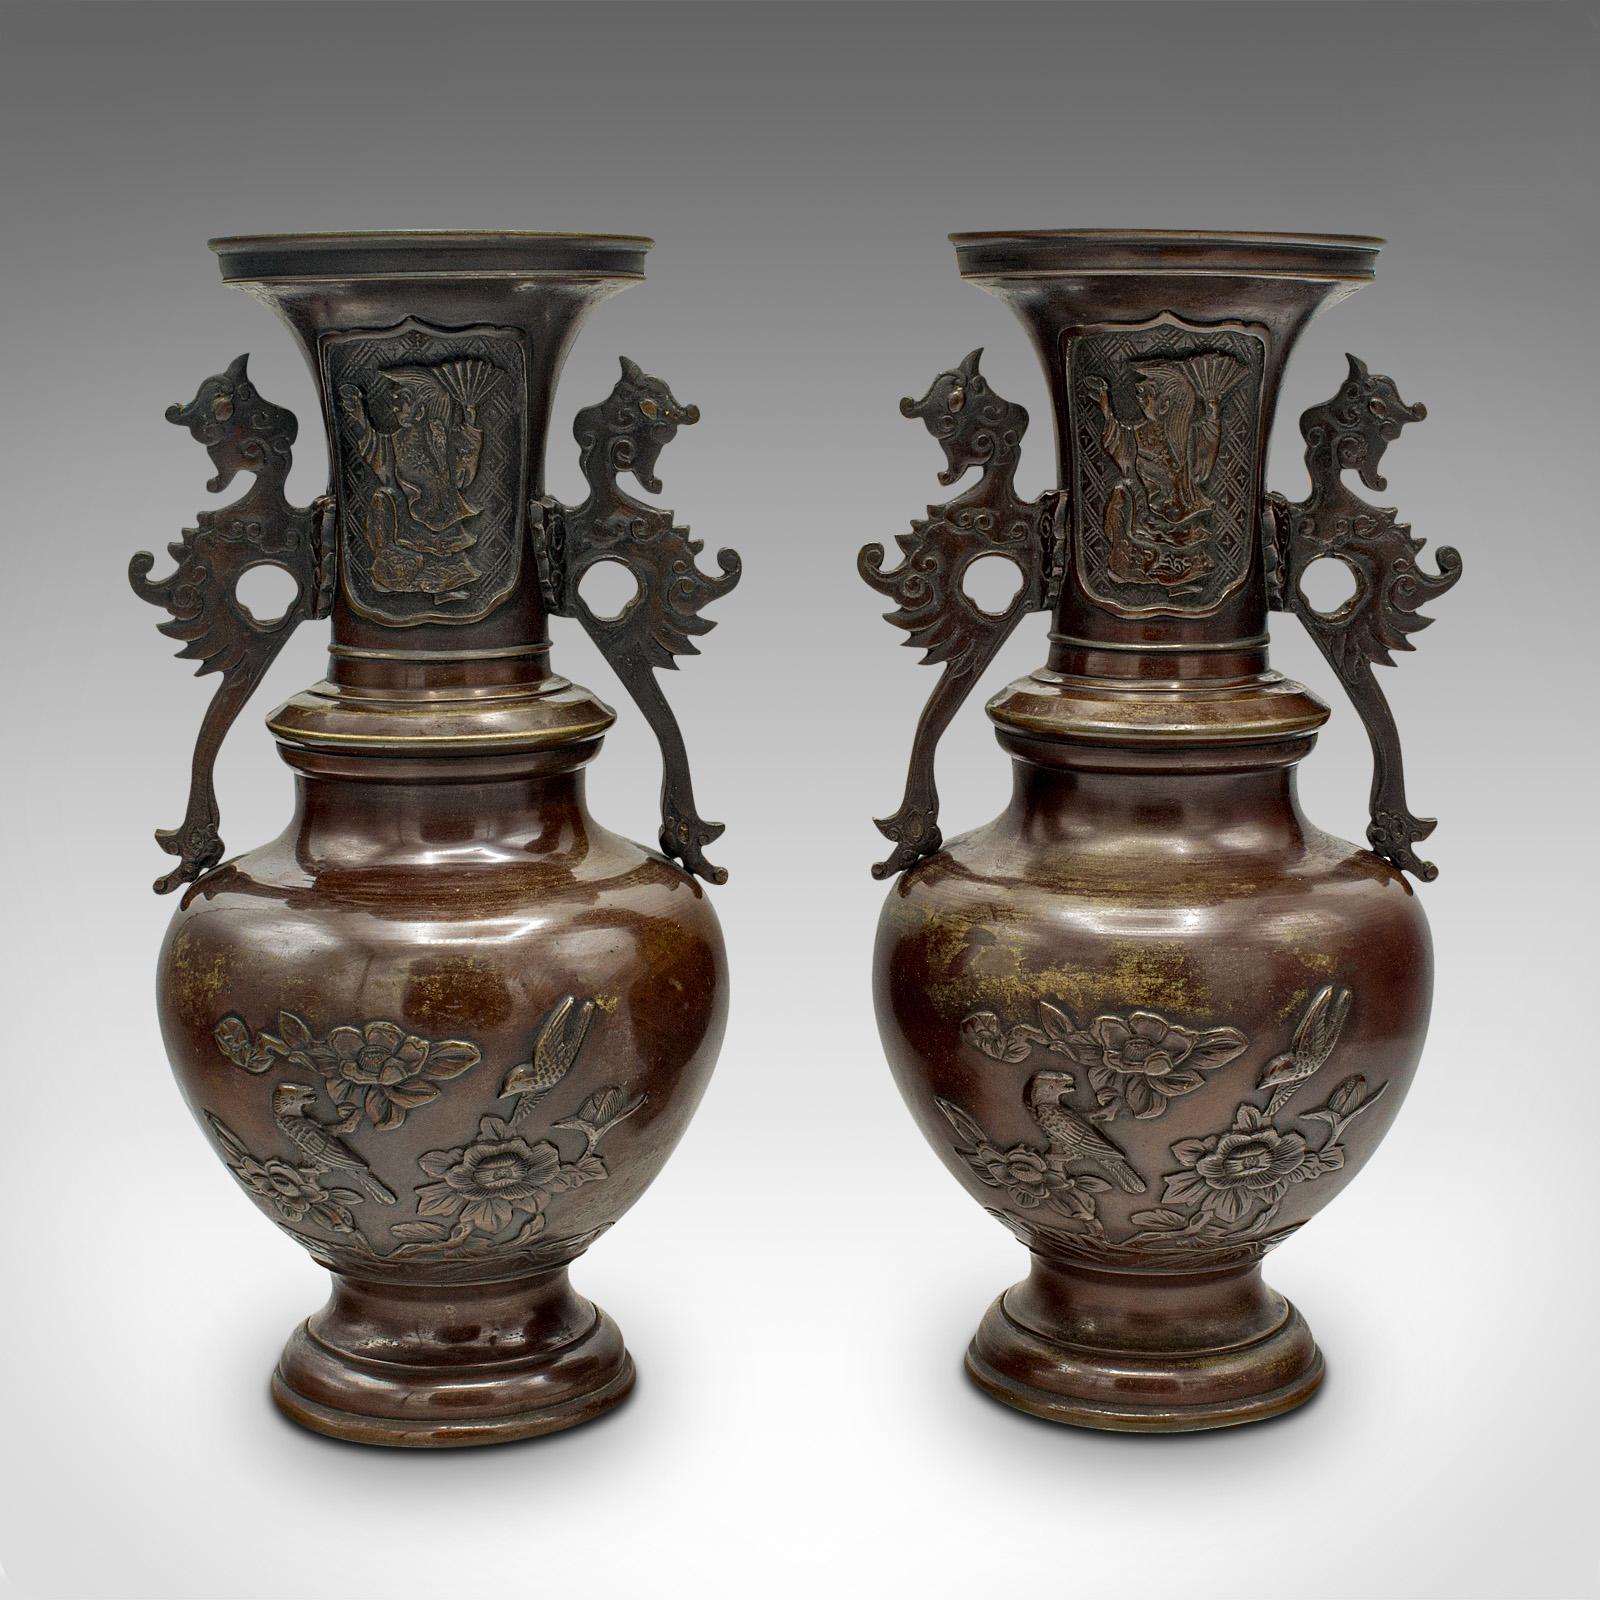 Dies ist ein Paar von antiken dekorativen Urnen. Japanische Balustervase aus Bronze aus der viktorianischen Zeit, um 1850.

Hübsches Vasenpaar aus den letzten Jahren der Edo-Zeit
Mit einer wünschenswerten gealterten Patina durchgehend
Verwitterte